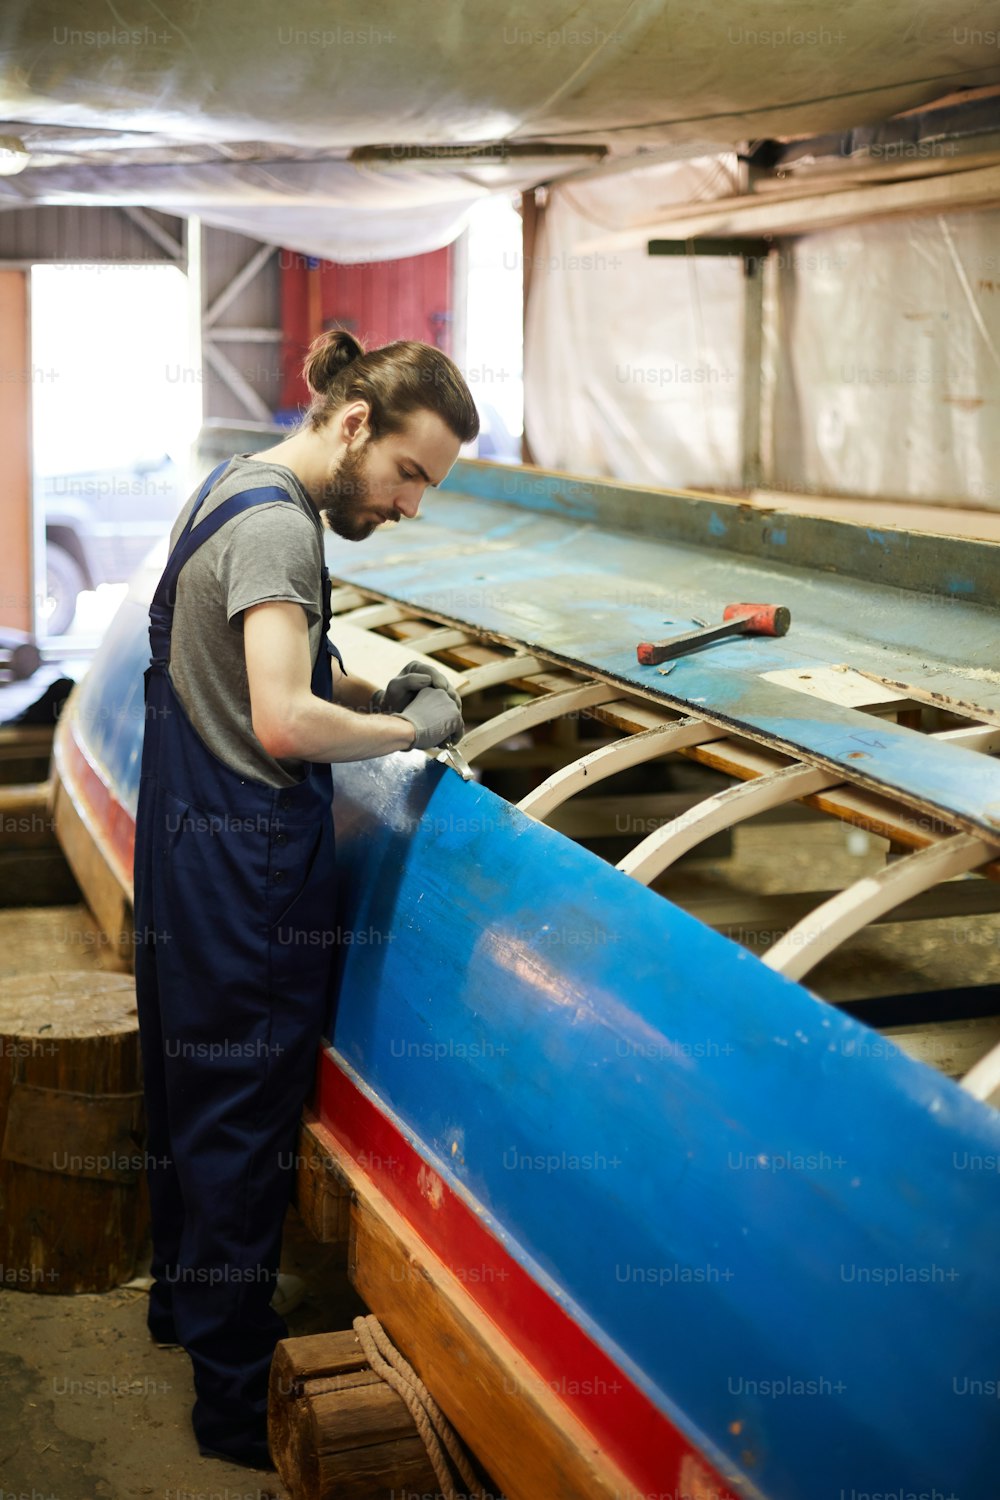 Young shipbuilder in overalls working over new vessel in hangar or workshop